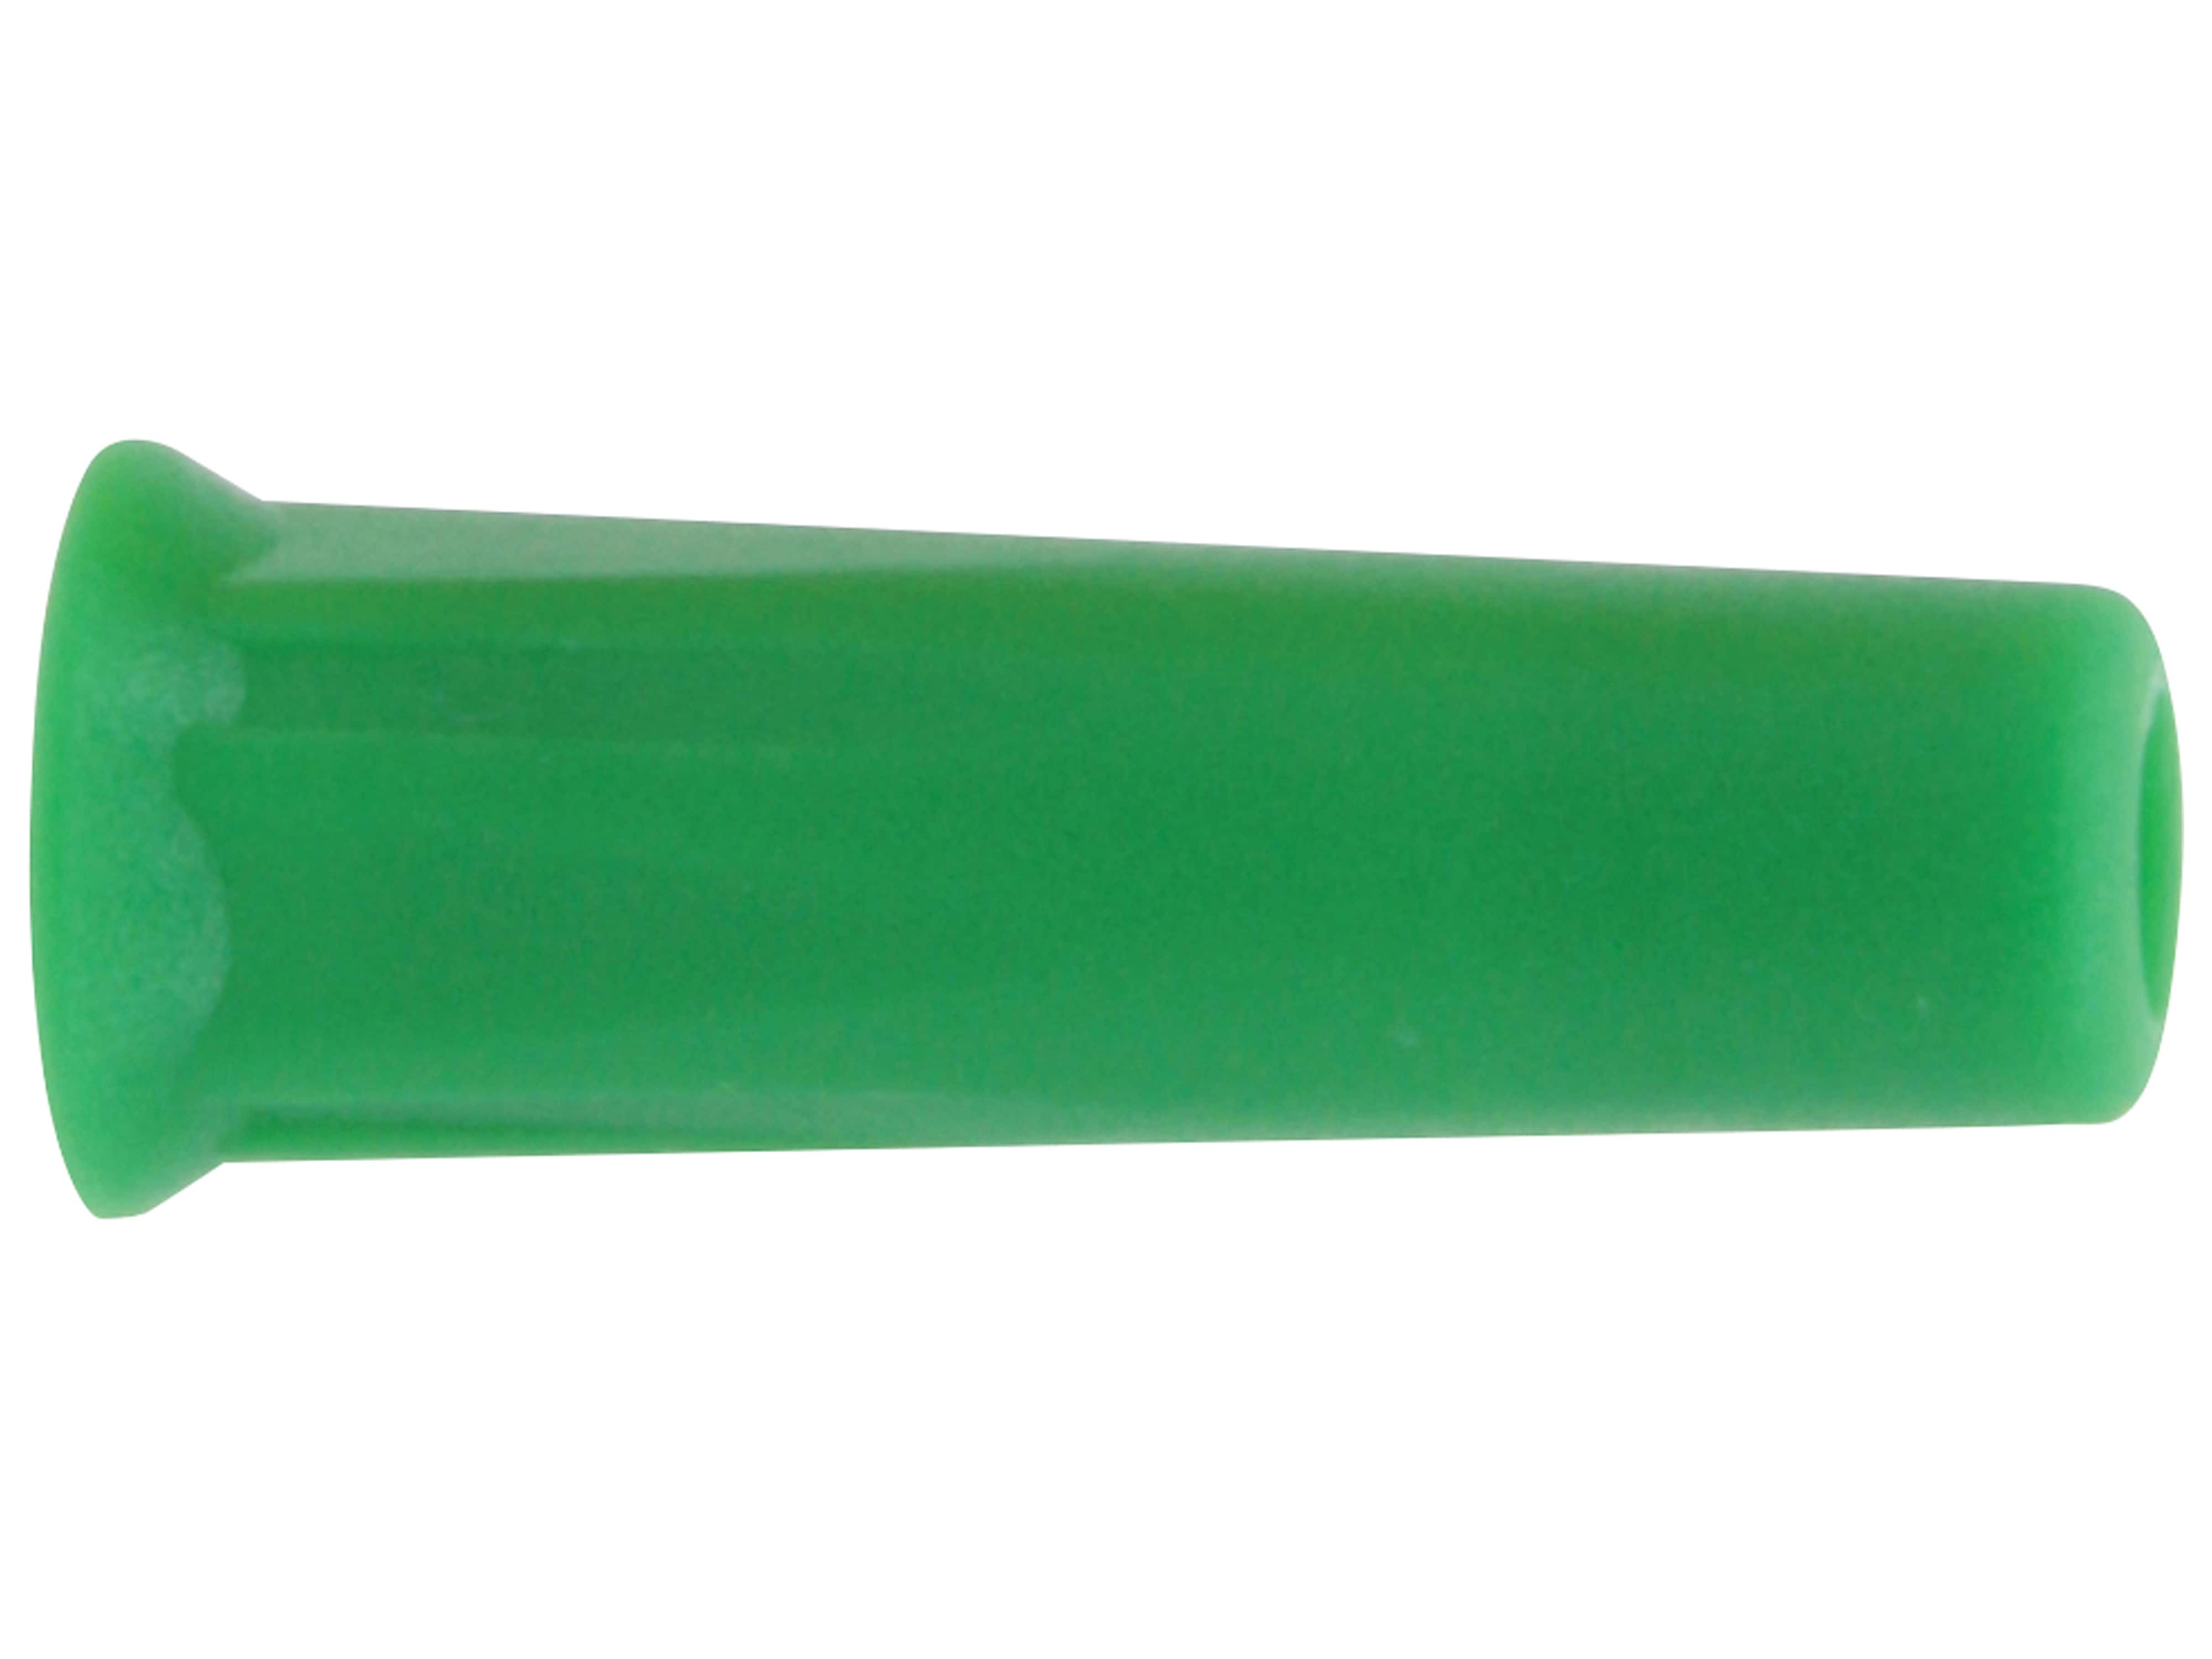 DONAU ELEKTRONIK Bananenkupplung, 4mm, grün, 3014